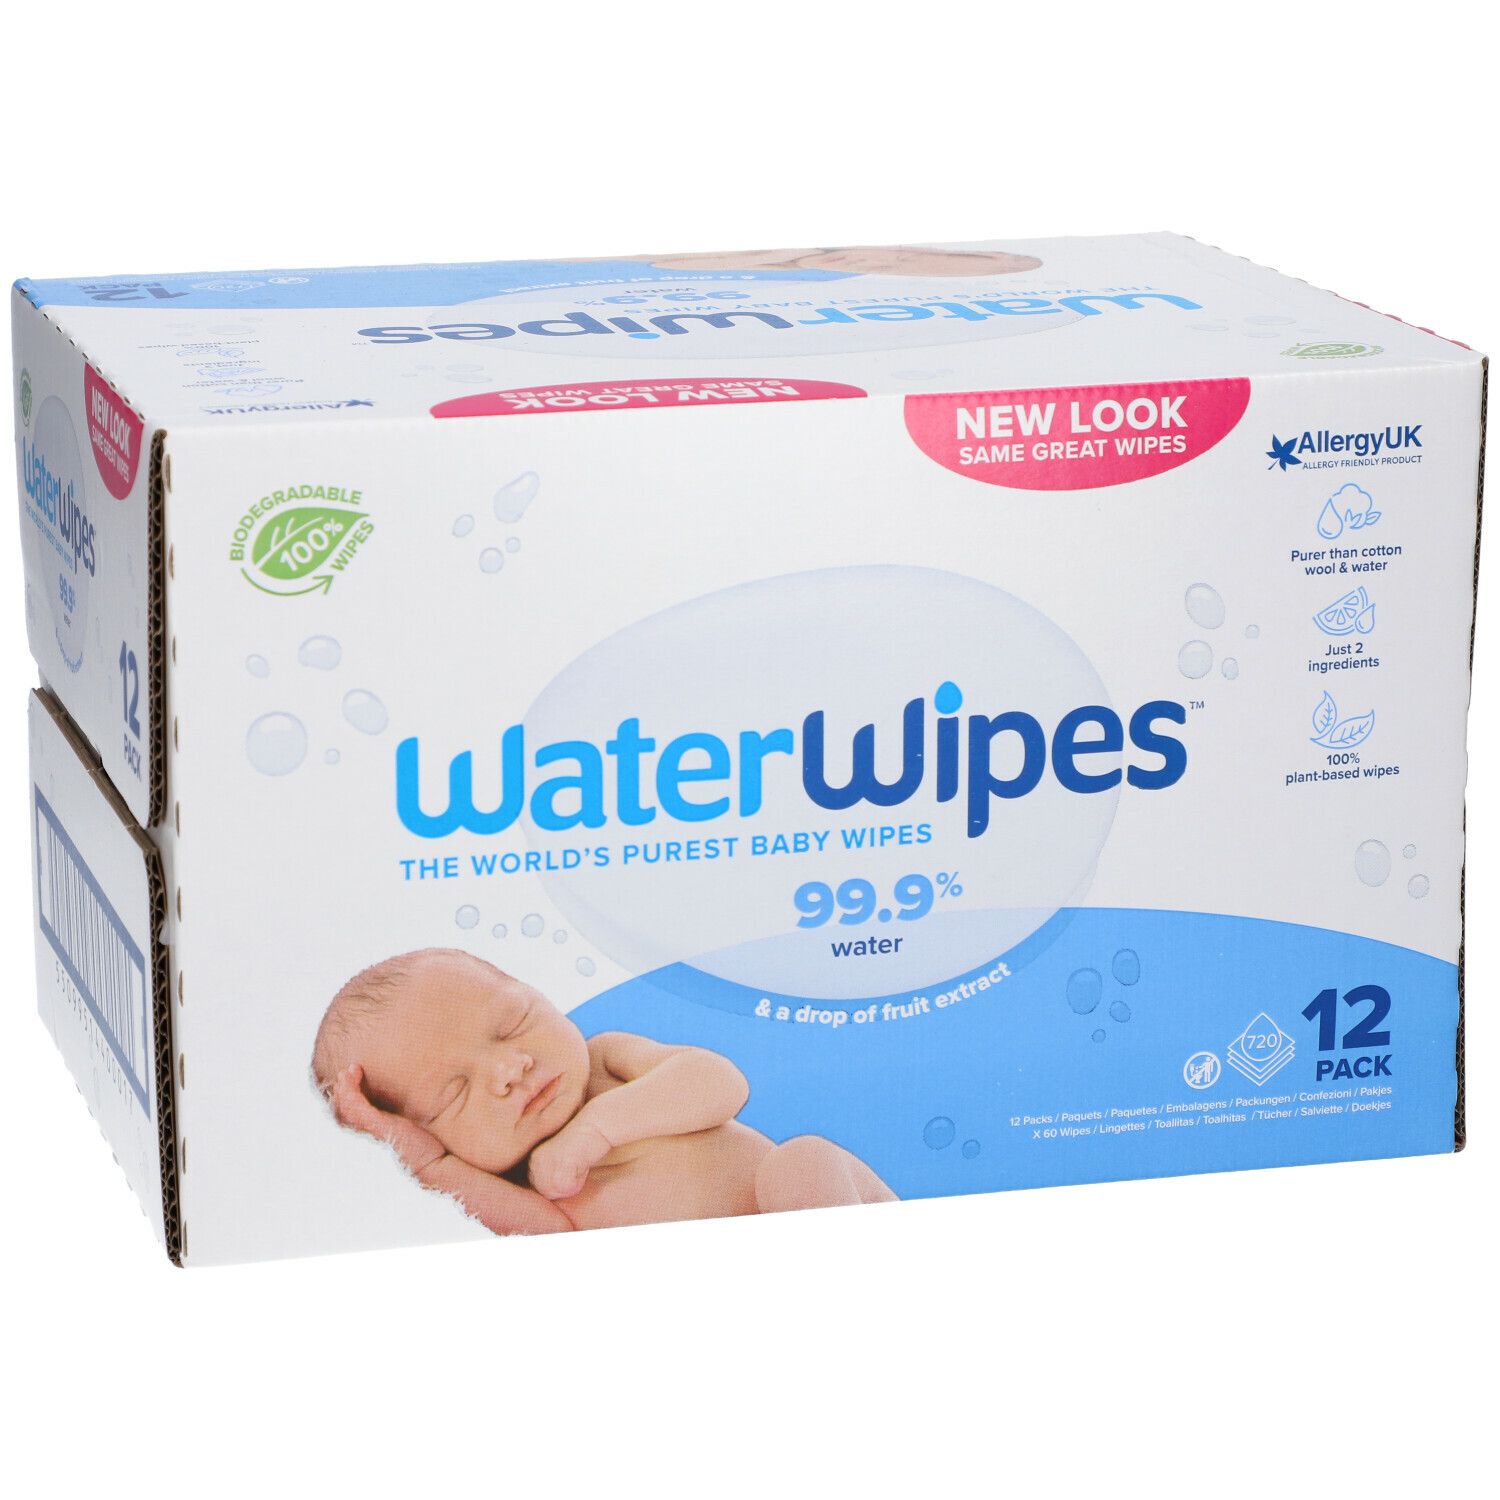 Avis] Les Lingettes pour Bébé à l'eau Waterwipes – Family Sauvetage